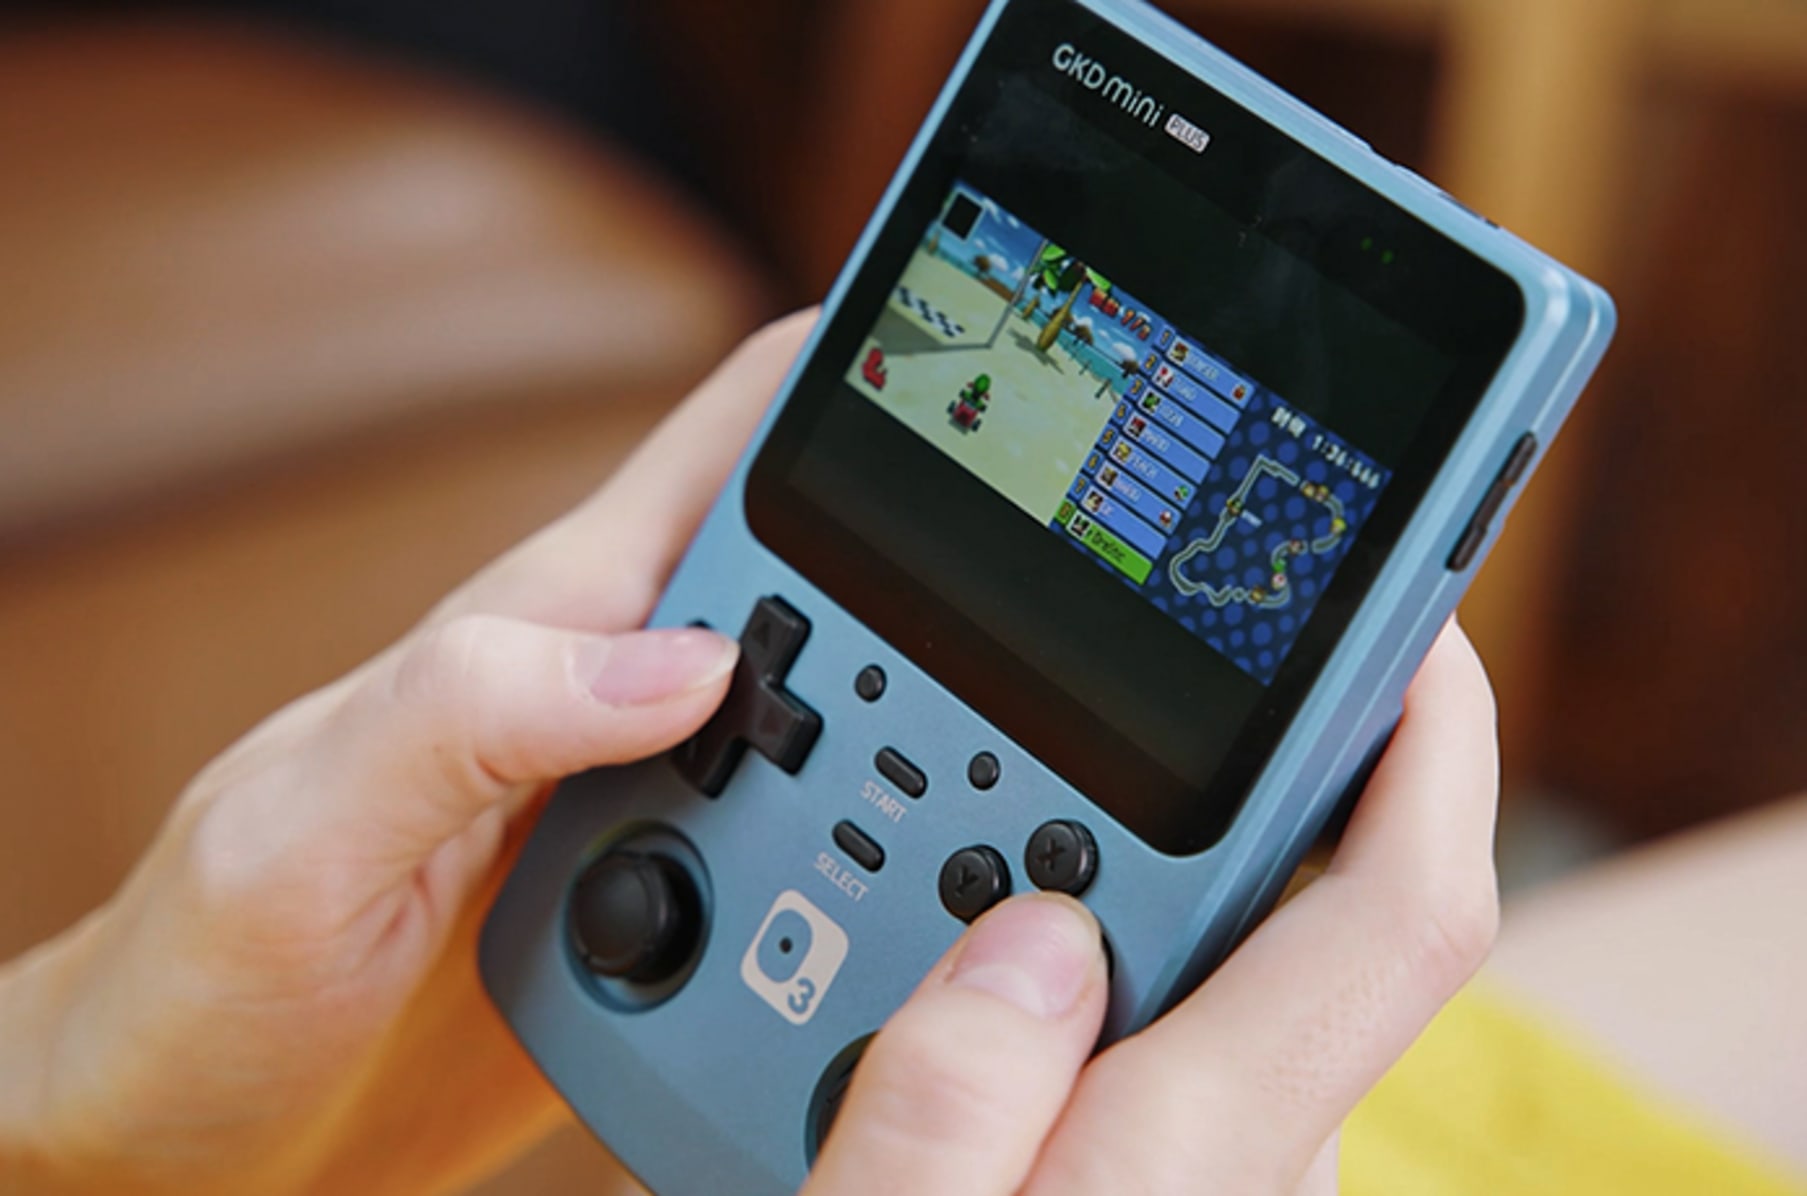 GKD Mini Retro Game Console